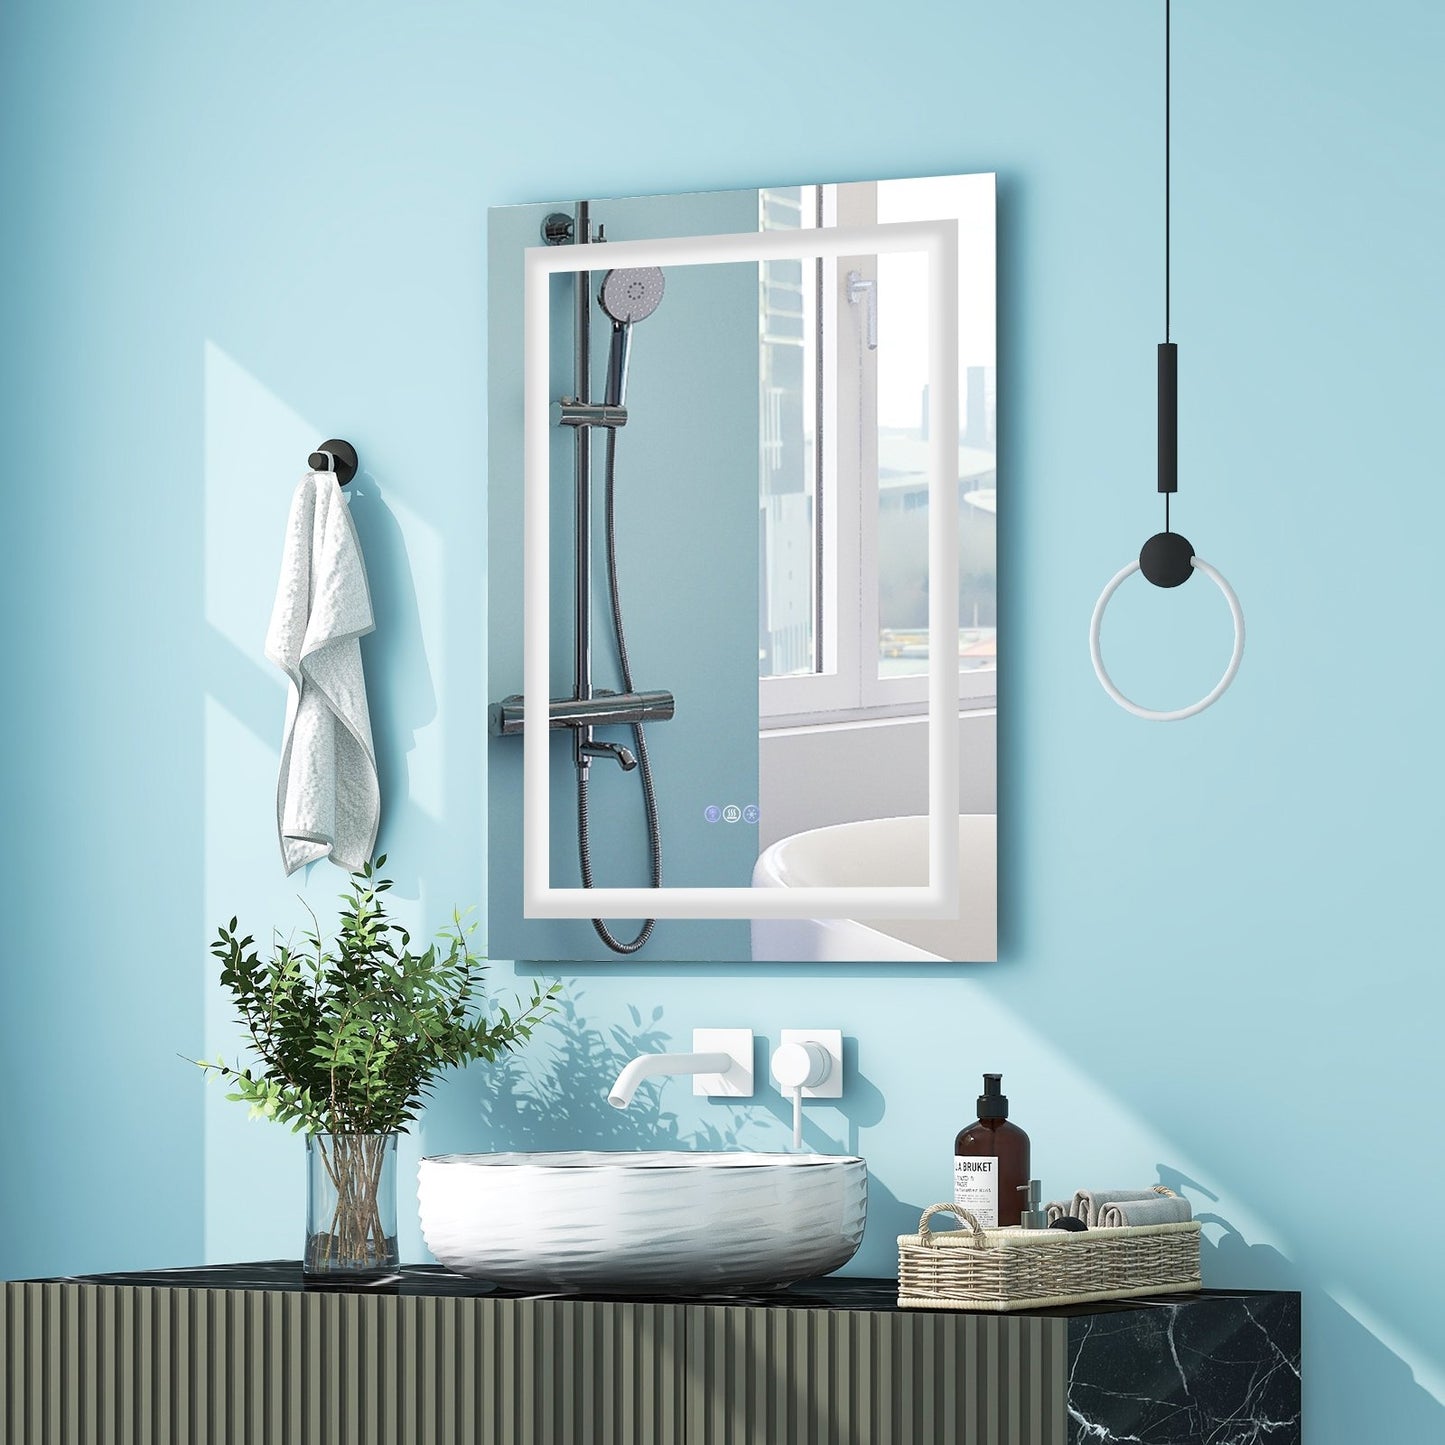 32 Inch x 24 Inch Bathroom Anti-Fog Wall Mirror with Colorful Light, Silver